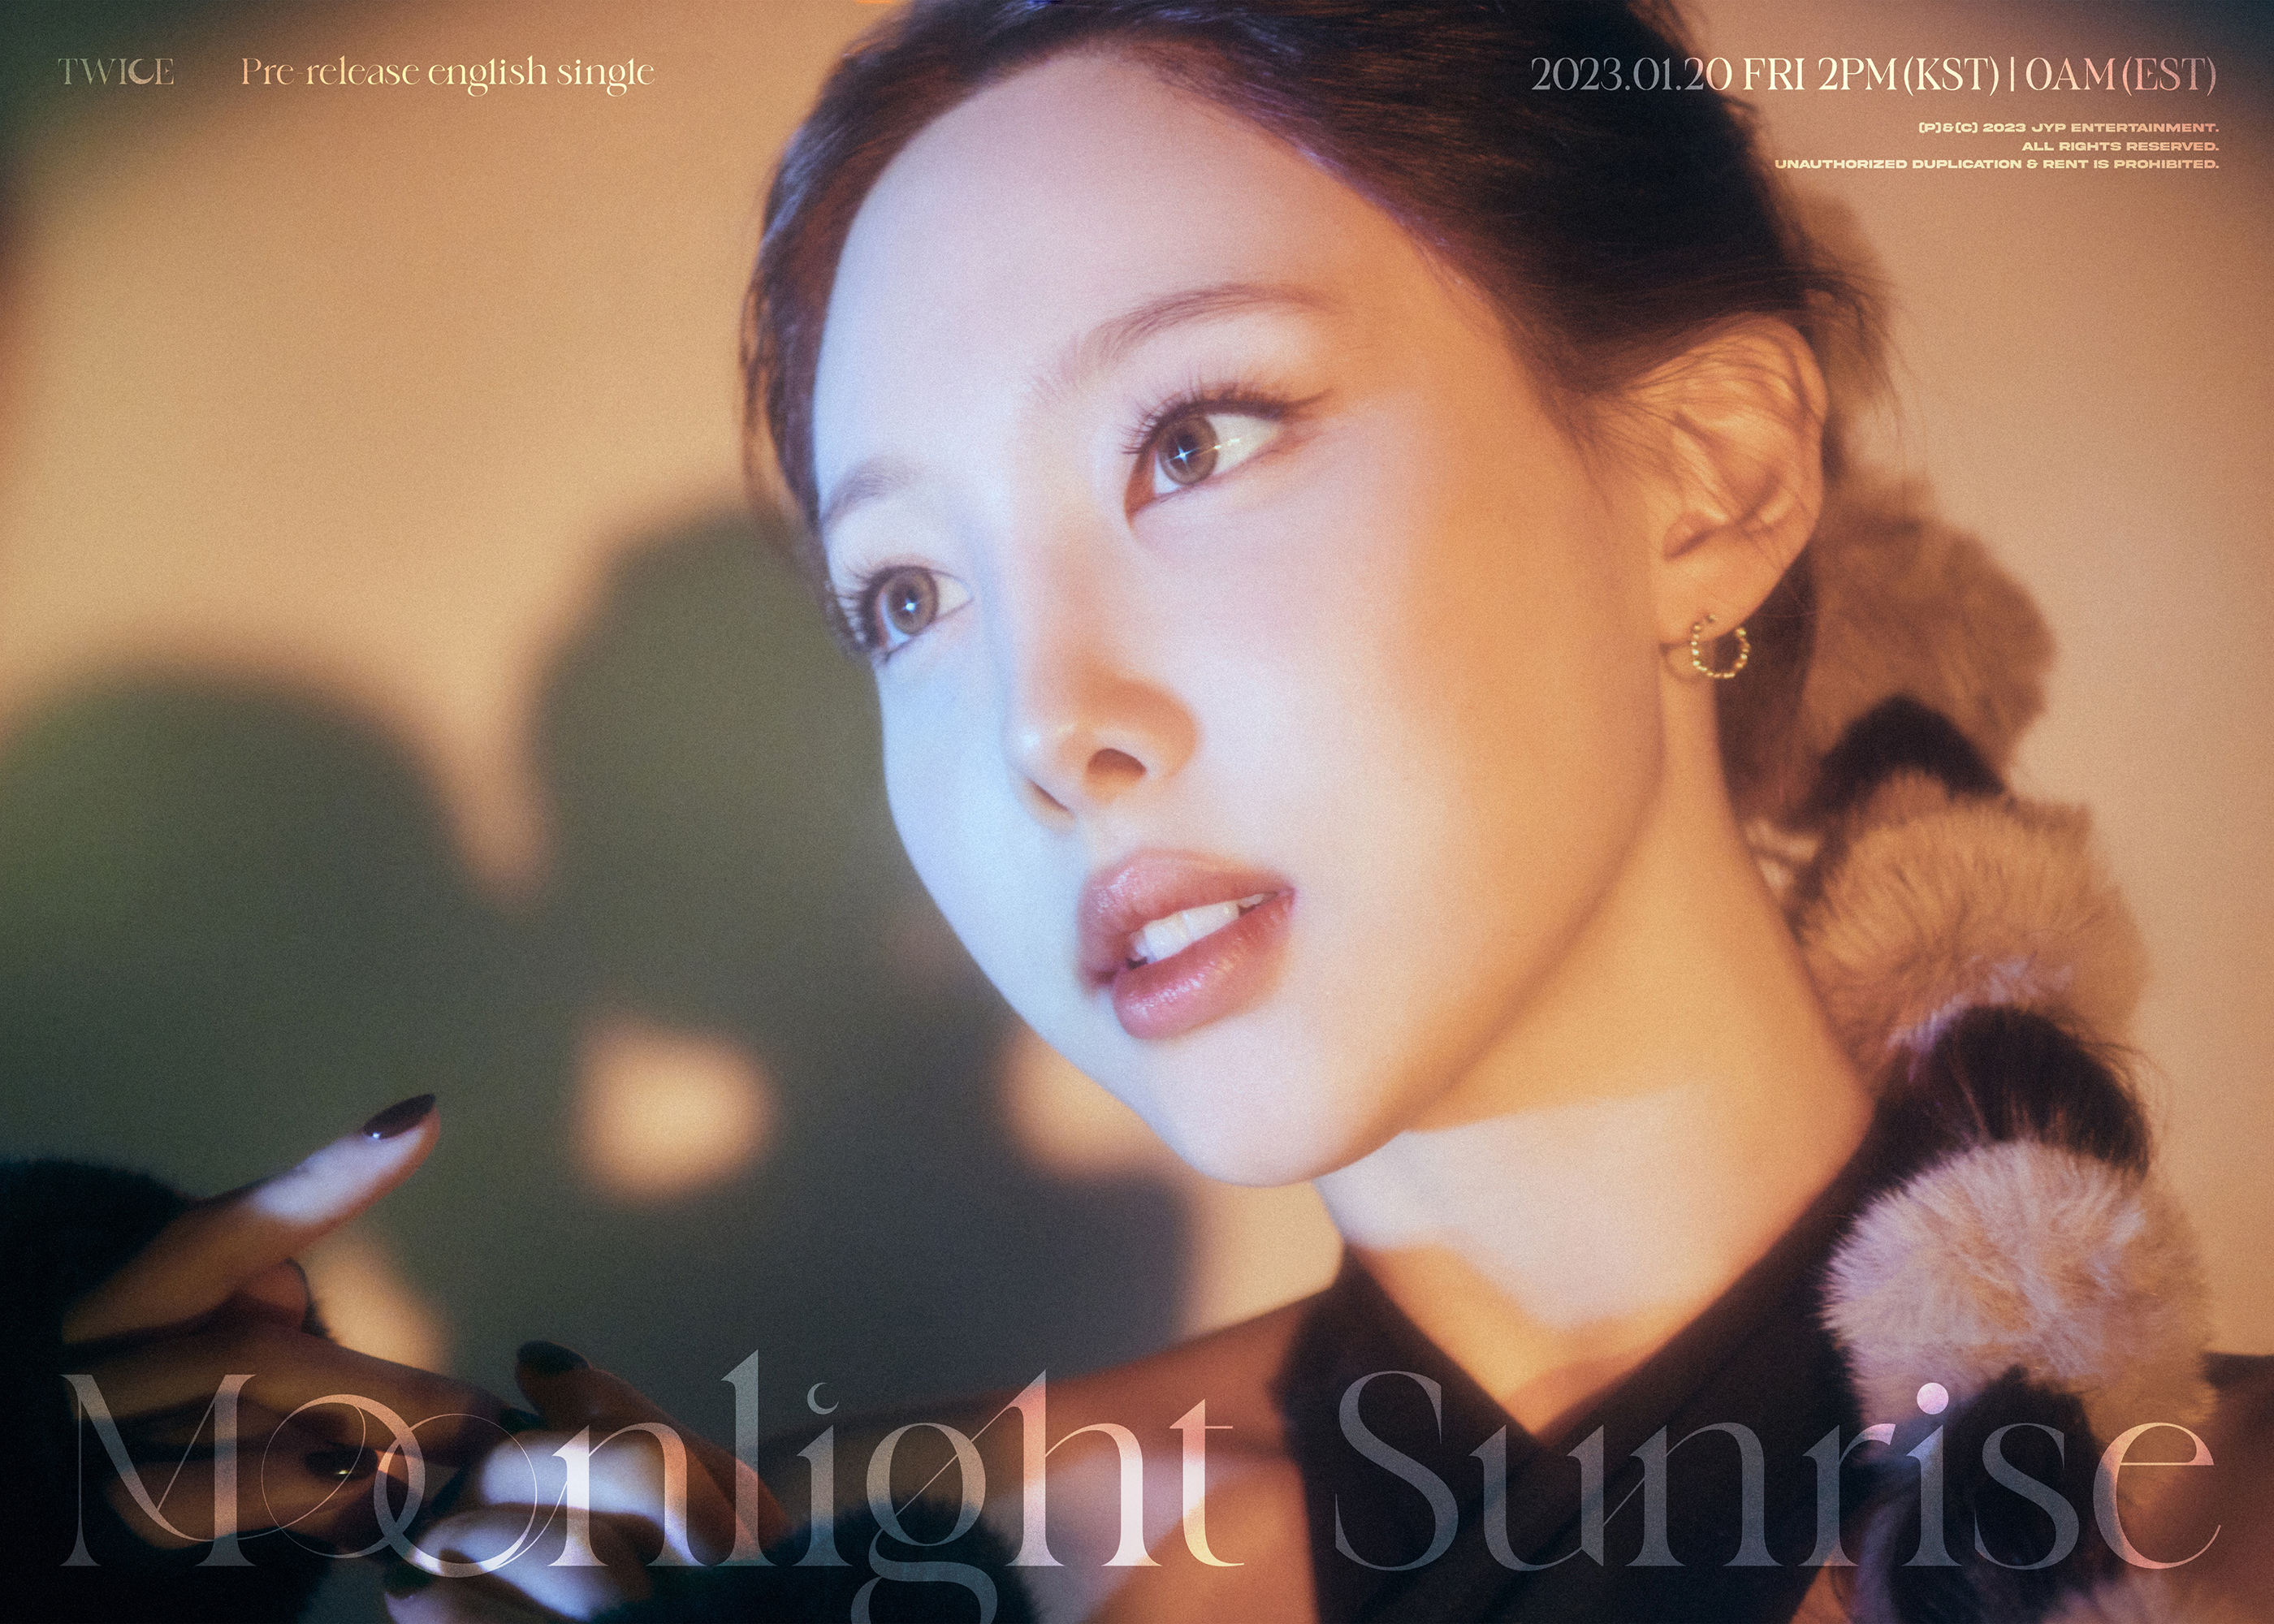 TWICE Nayeon Moonlight Sunrise Teaser